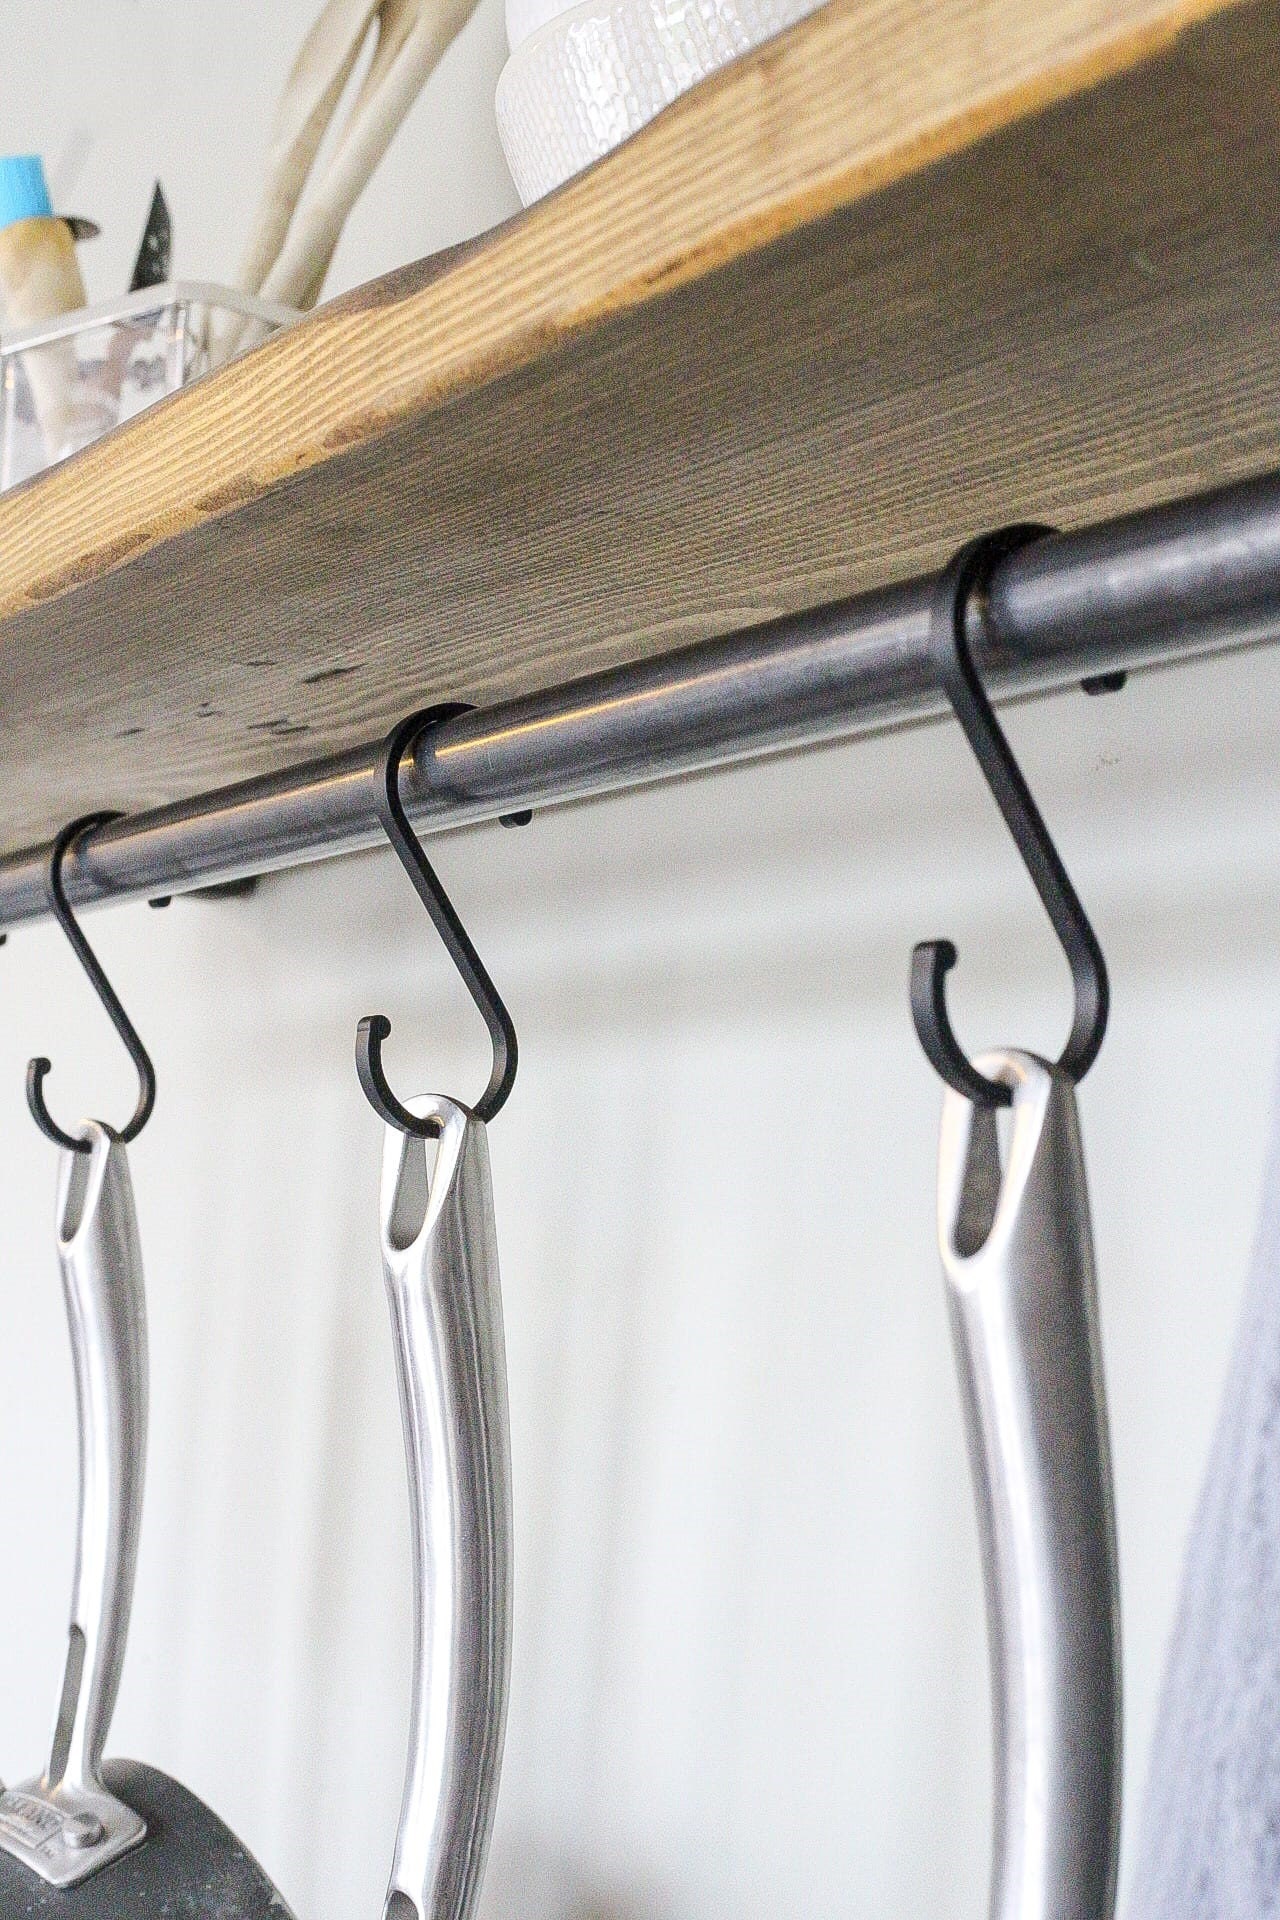 barras metalicas para colgar en la cocina - Google Search